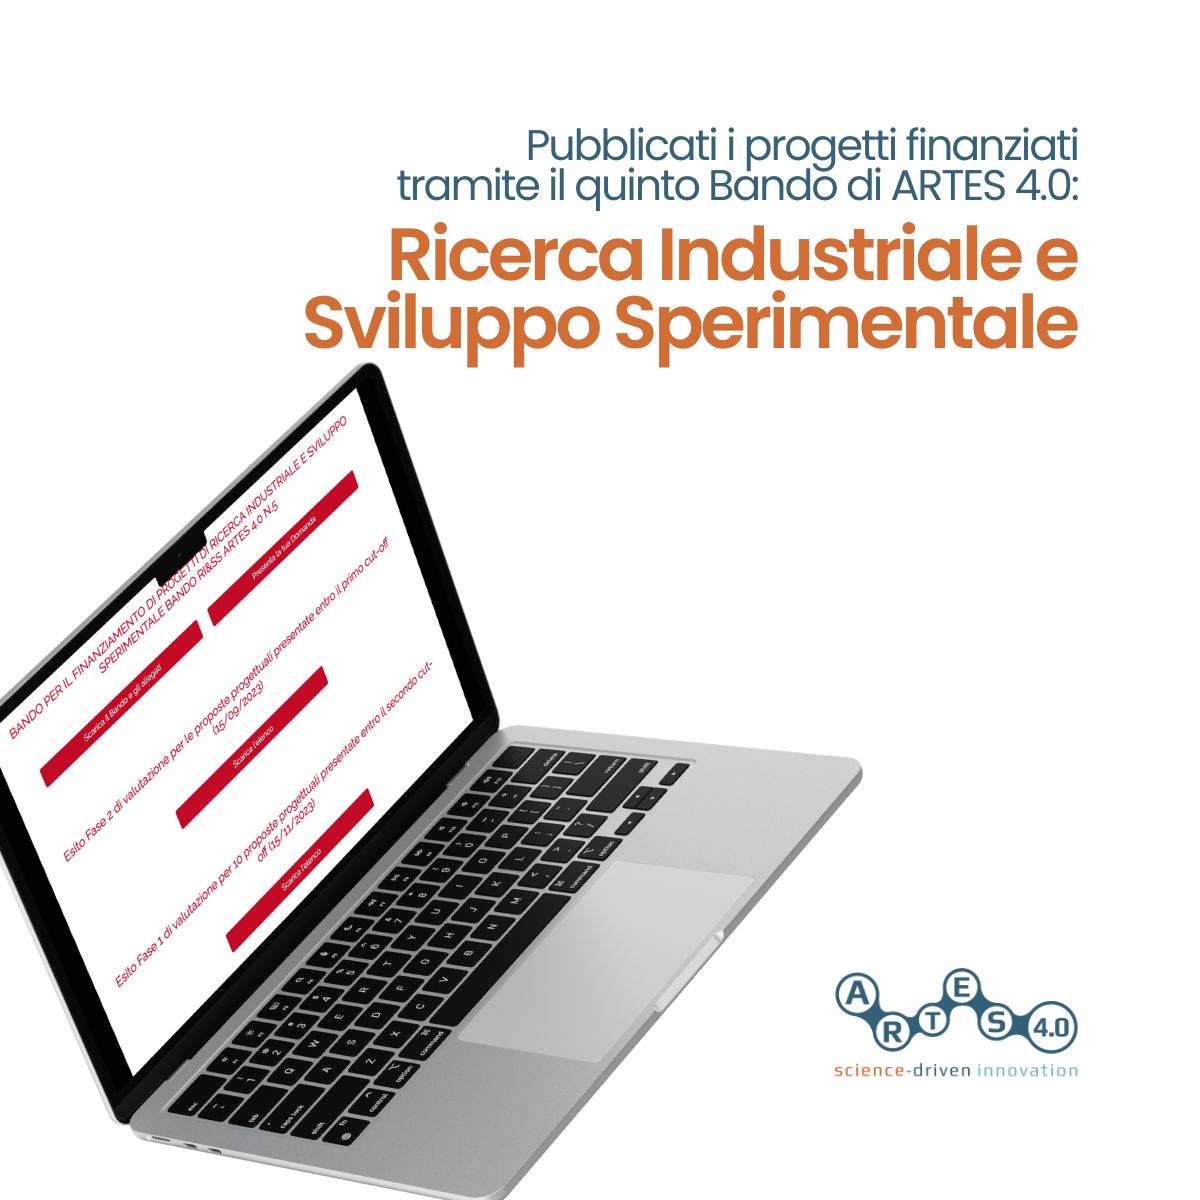 Pubblicato l’elenco dei soggetti ammessi a finanziamento nell’ambito del Bando RI&SS ARTES 4.0. N.5, 8 milioni di euro per 31 aziende innovative italiane.